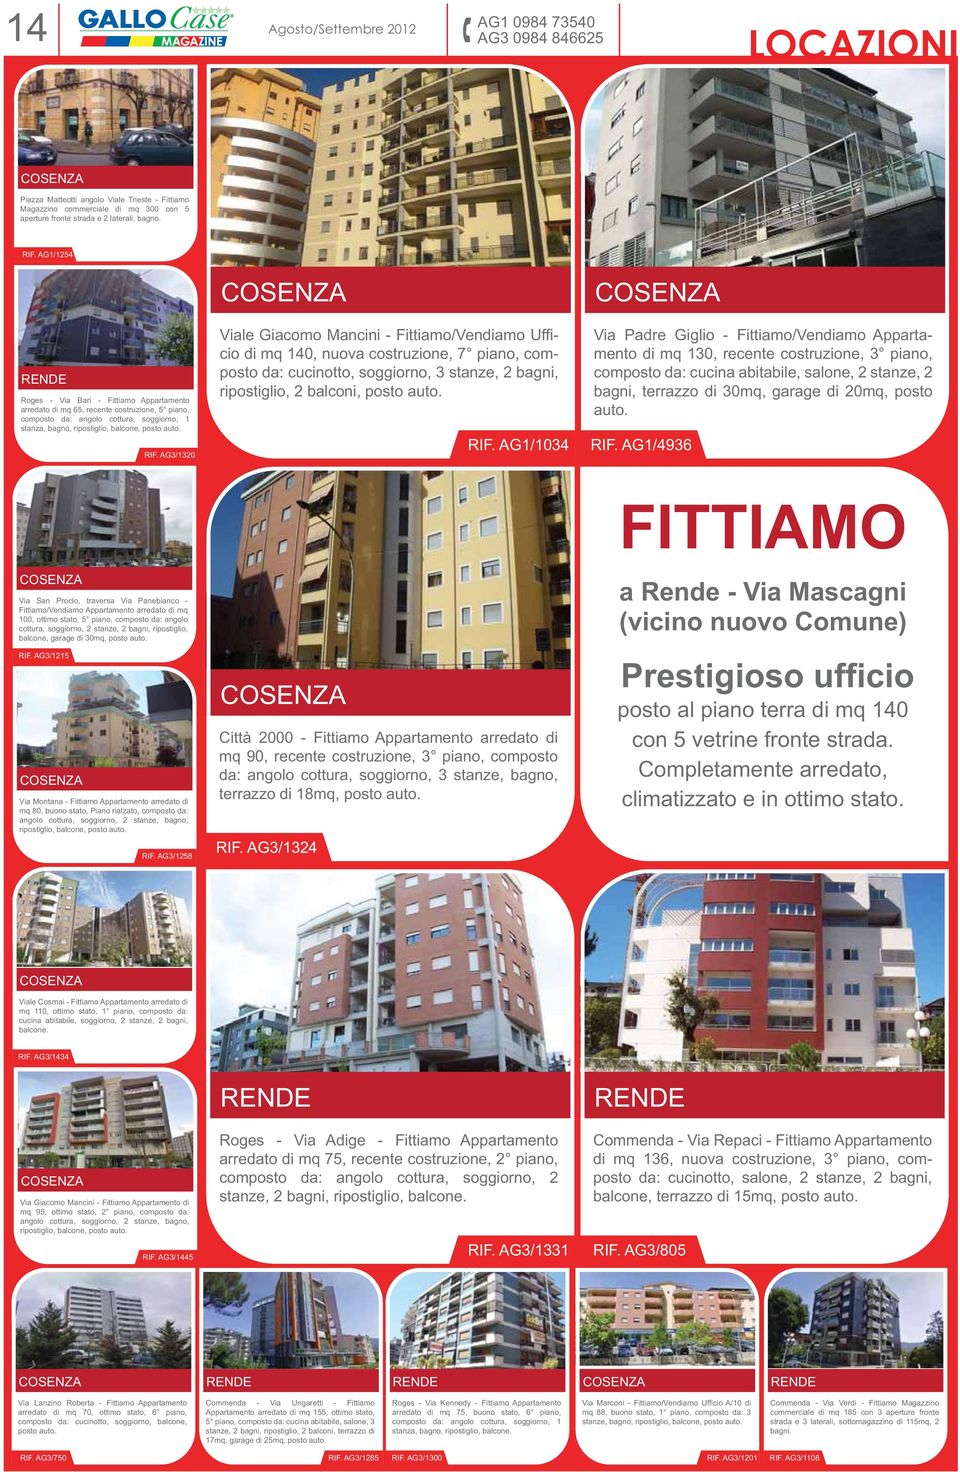 RIF. AG3/1320 Viale Giacomo Mancini - Fittiamo/Vendiamo Ufficio di mq 140, nuova costruzione, 7 piano, composto da: cucinotto, soggiorno, 3 stanze, 2 bagni, ripostiglio, 2 balconi, posto auto. RIF.